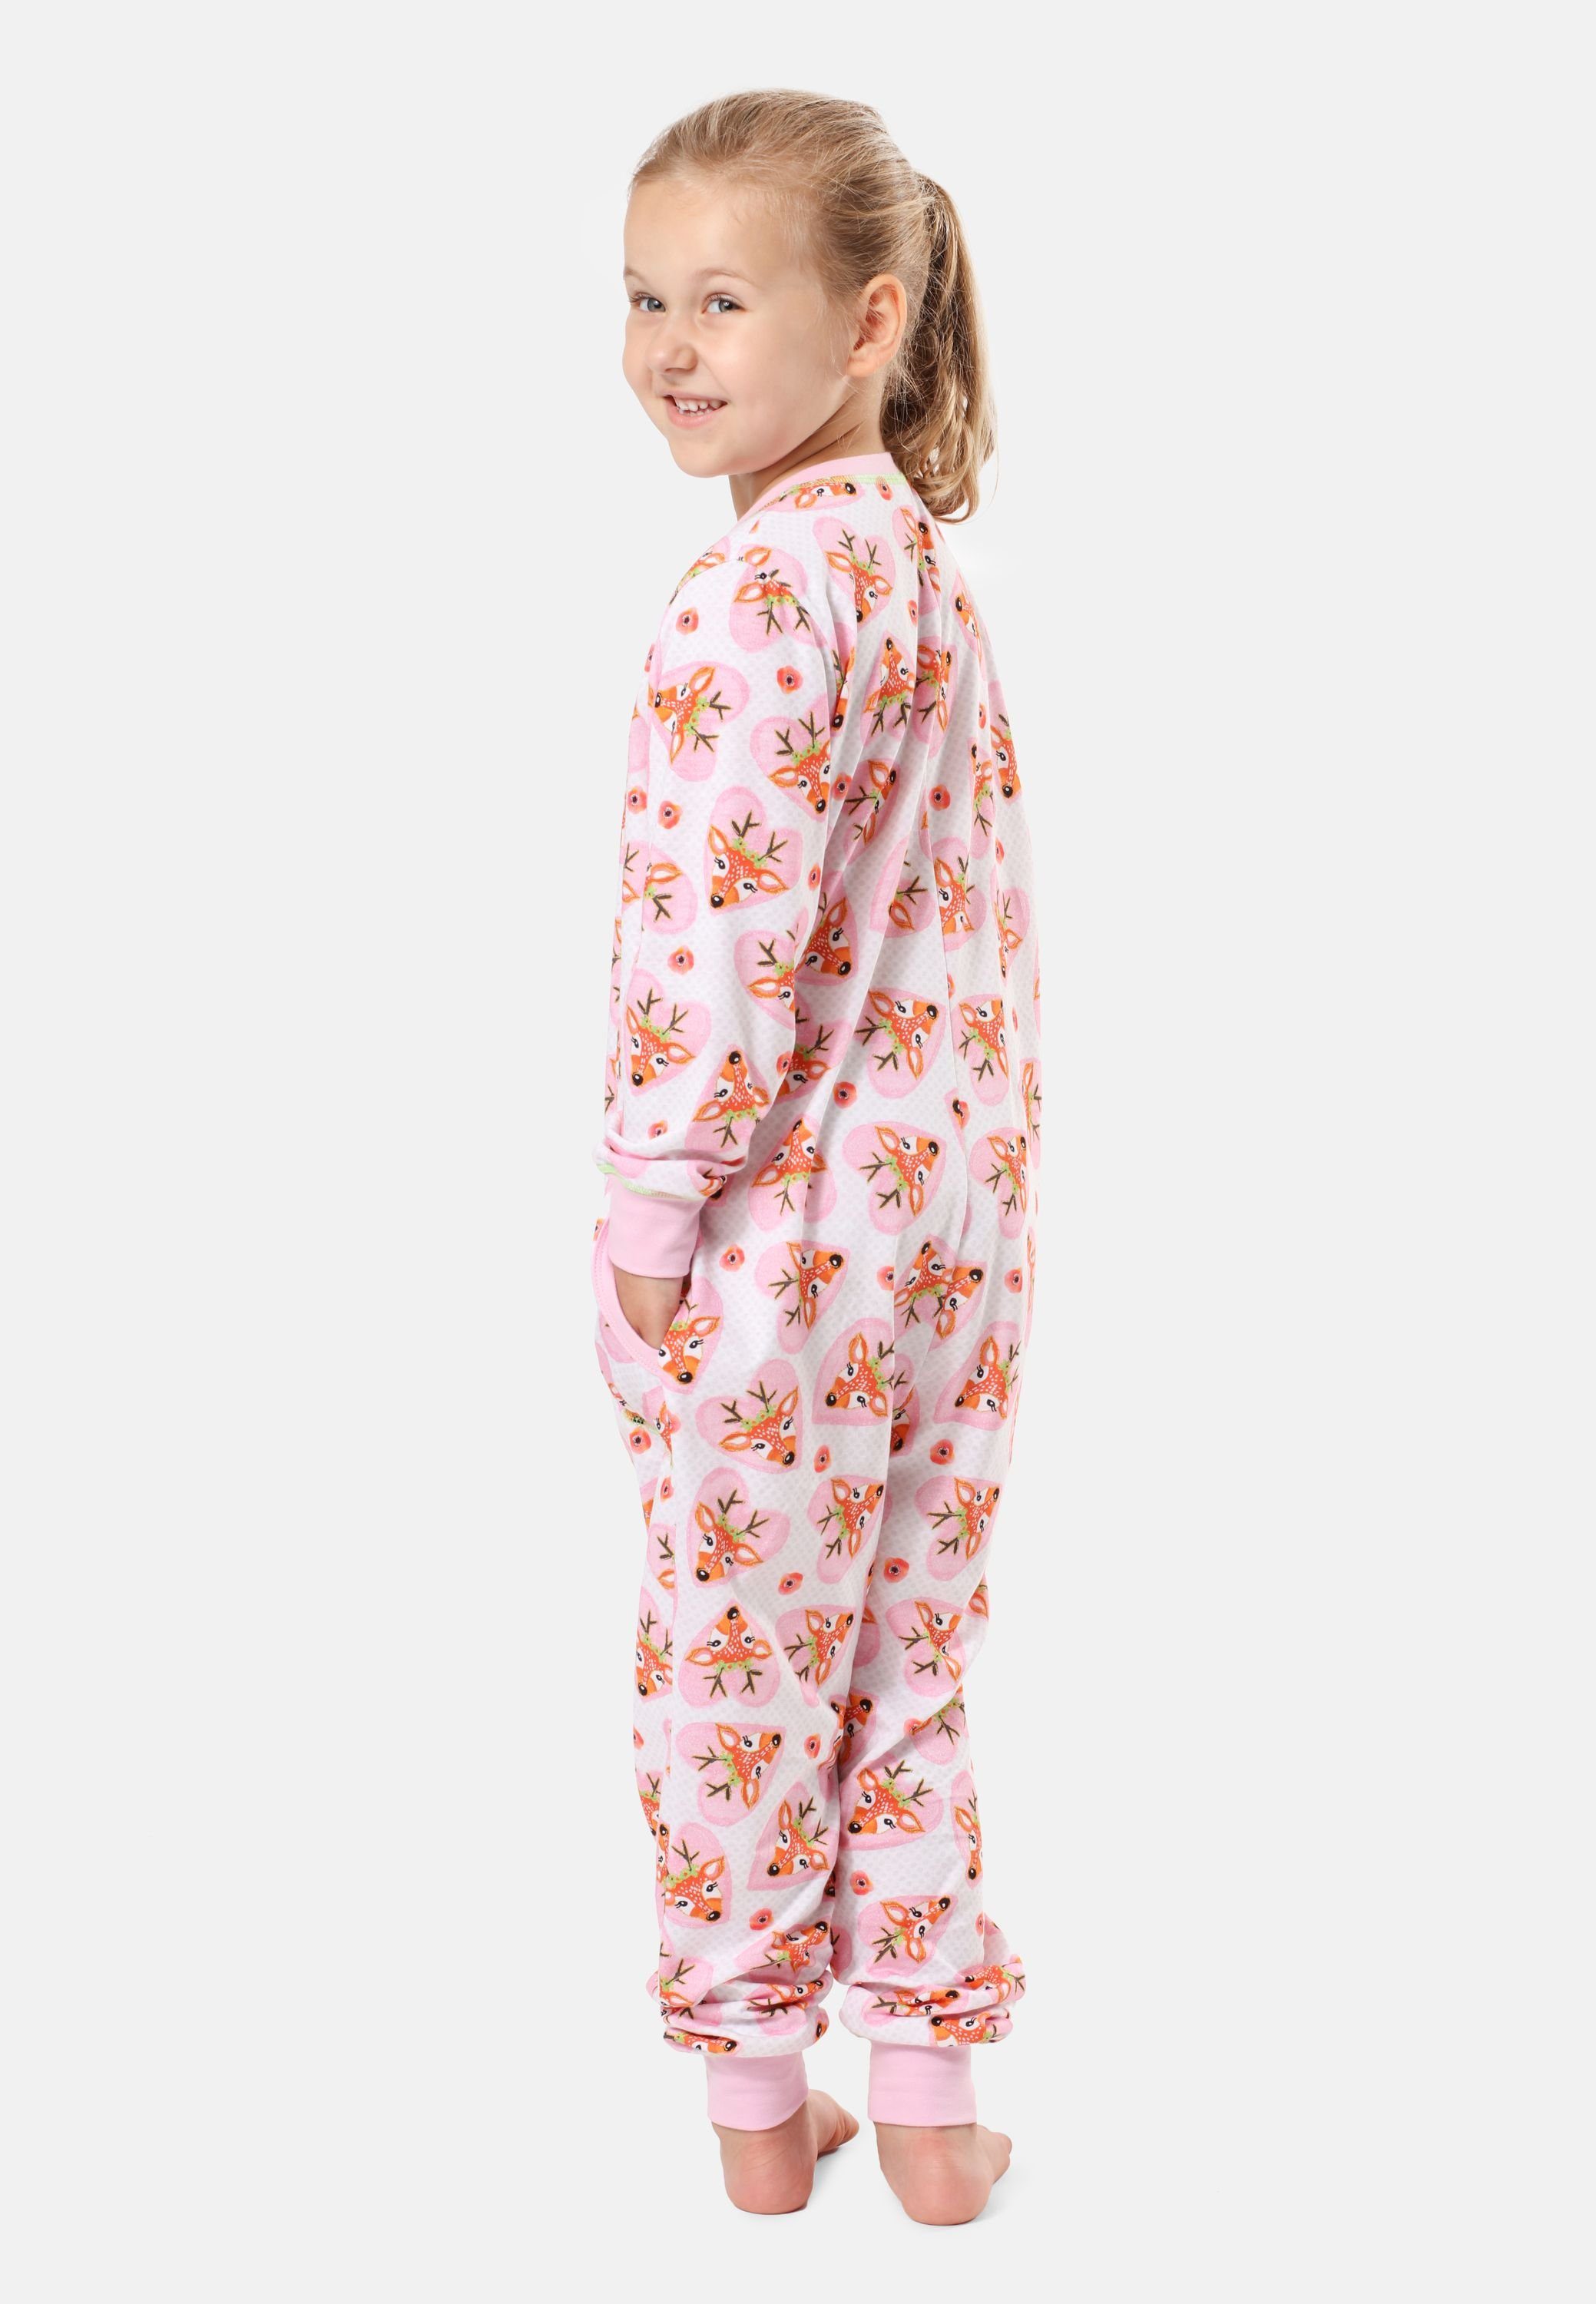 MS10-186 Rosa Style Schlafanzug Merry Mädchen Herzen Schlafanzug Jumpsuit Hirsche